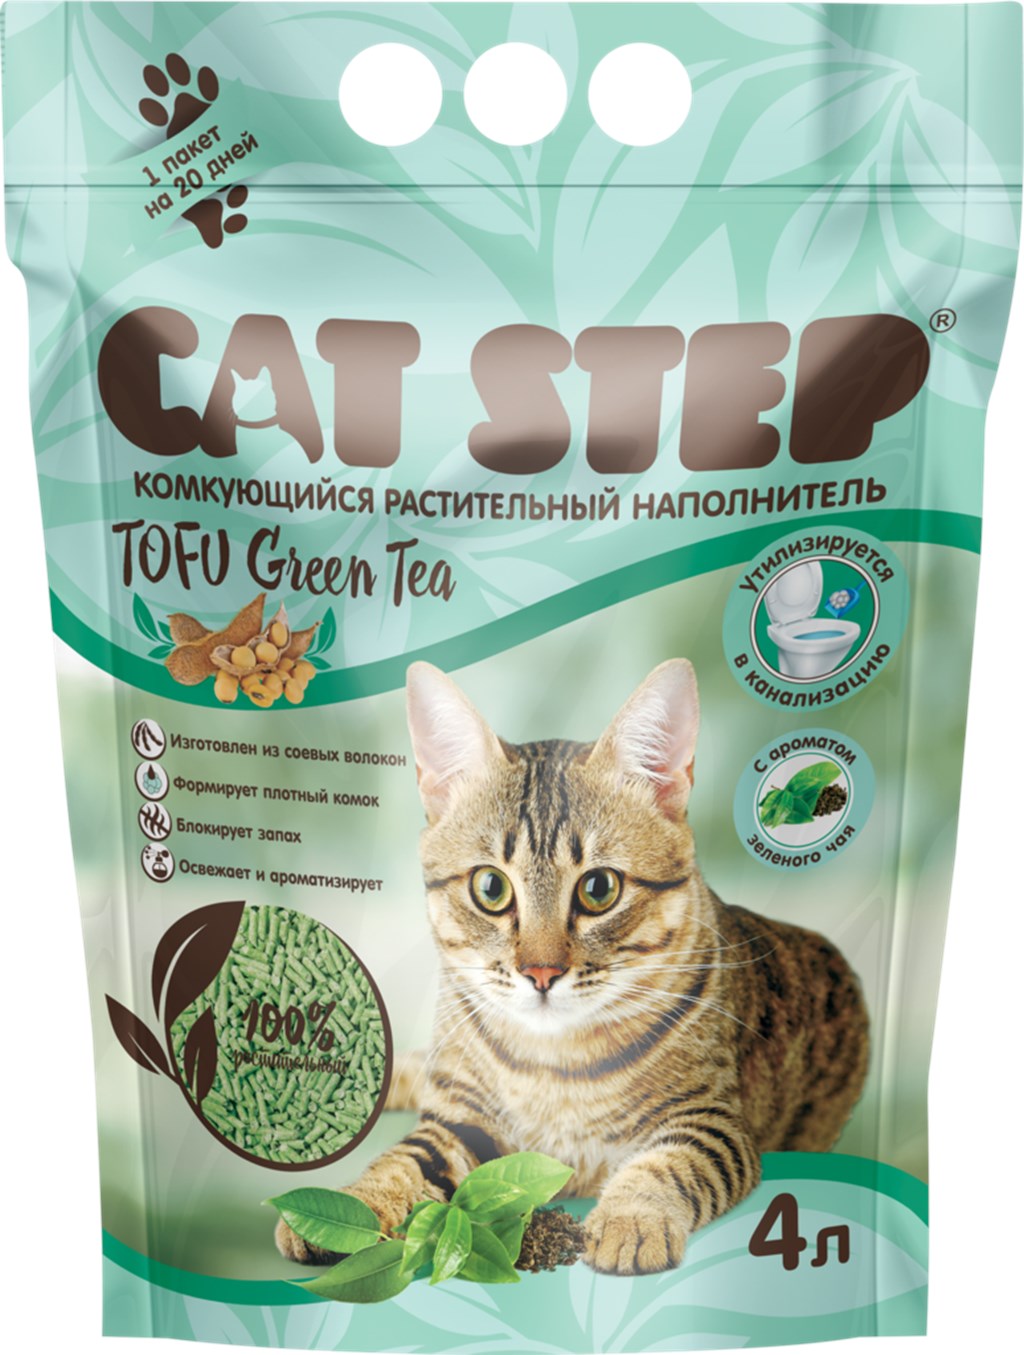 Комкующийся наполнитель Cat Step Tofu Green tea растительный, зеленый чай, 4 л